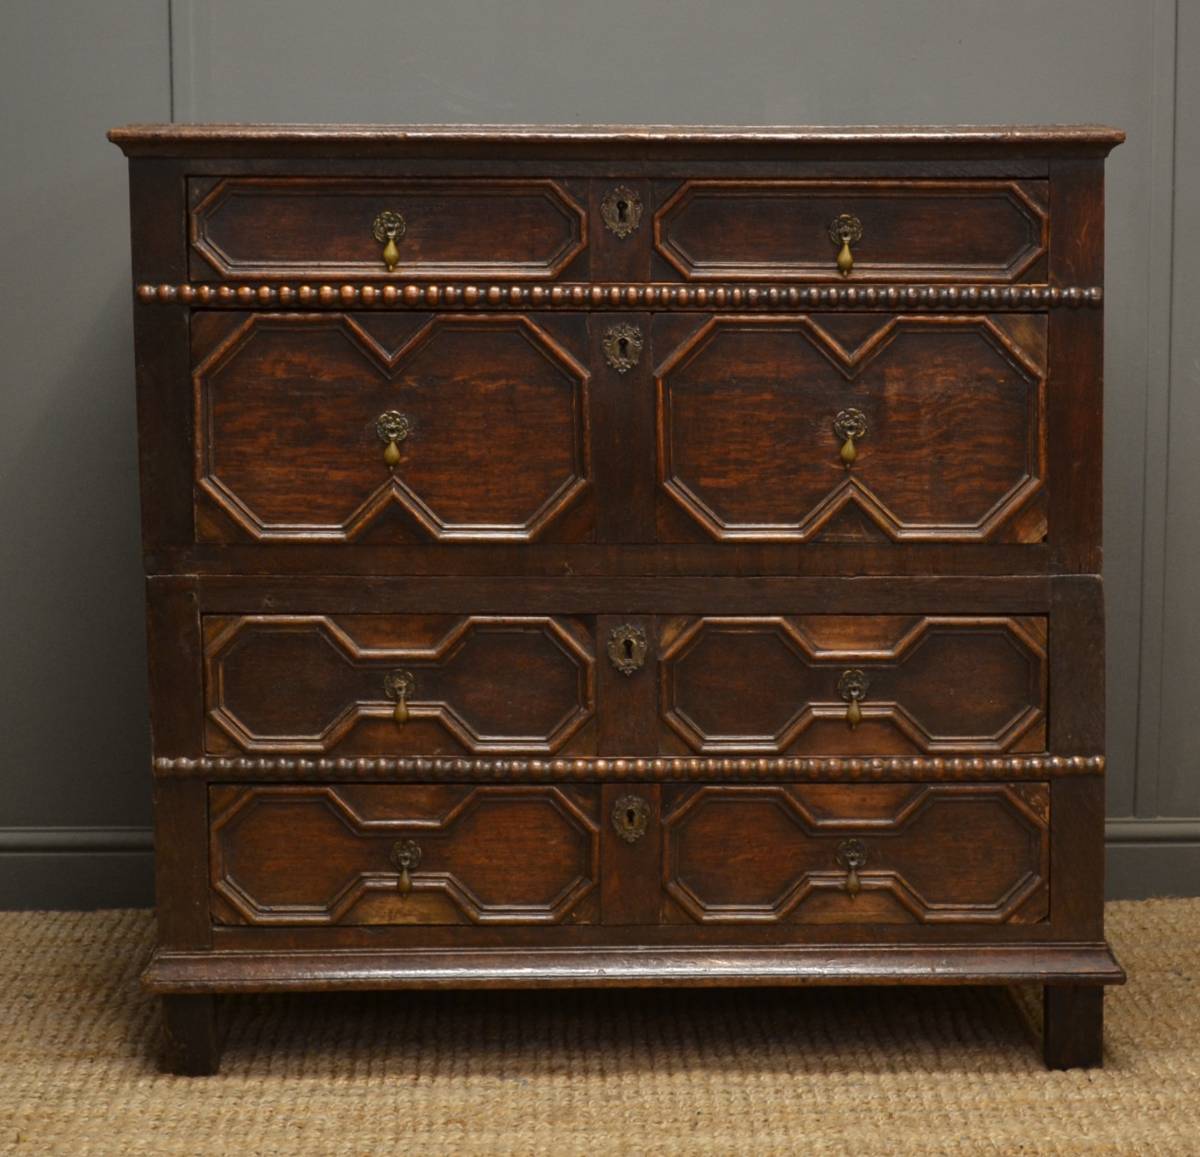 Early Period Antique Furniture - Oak Chest